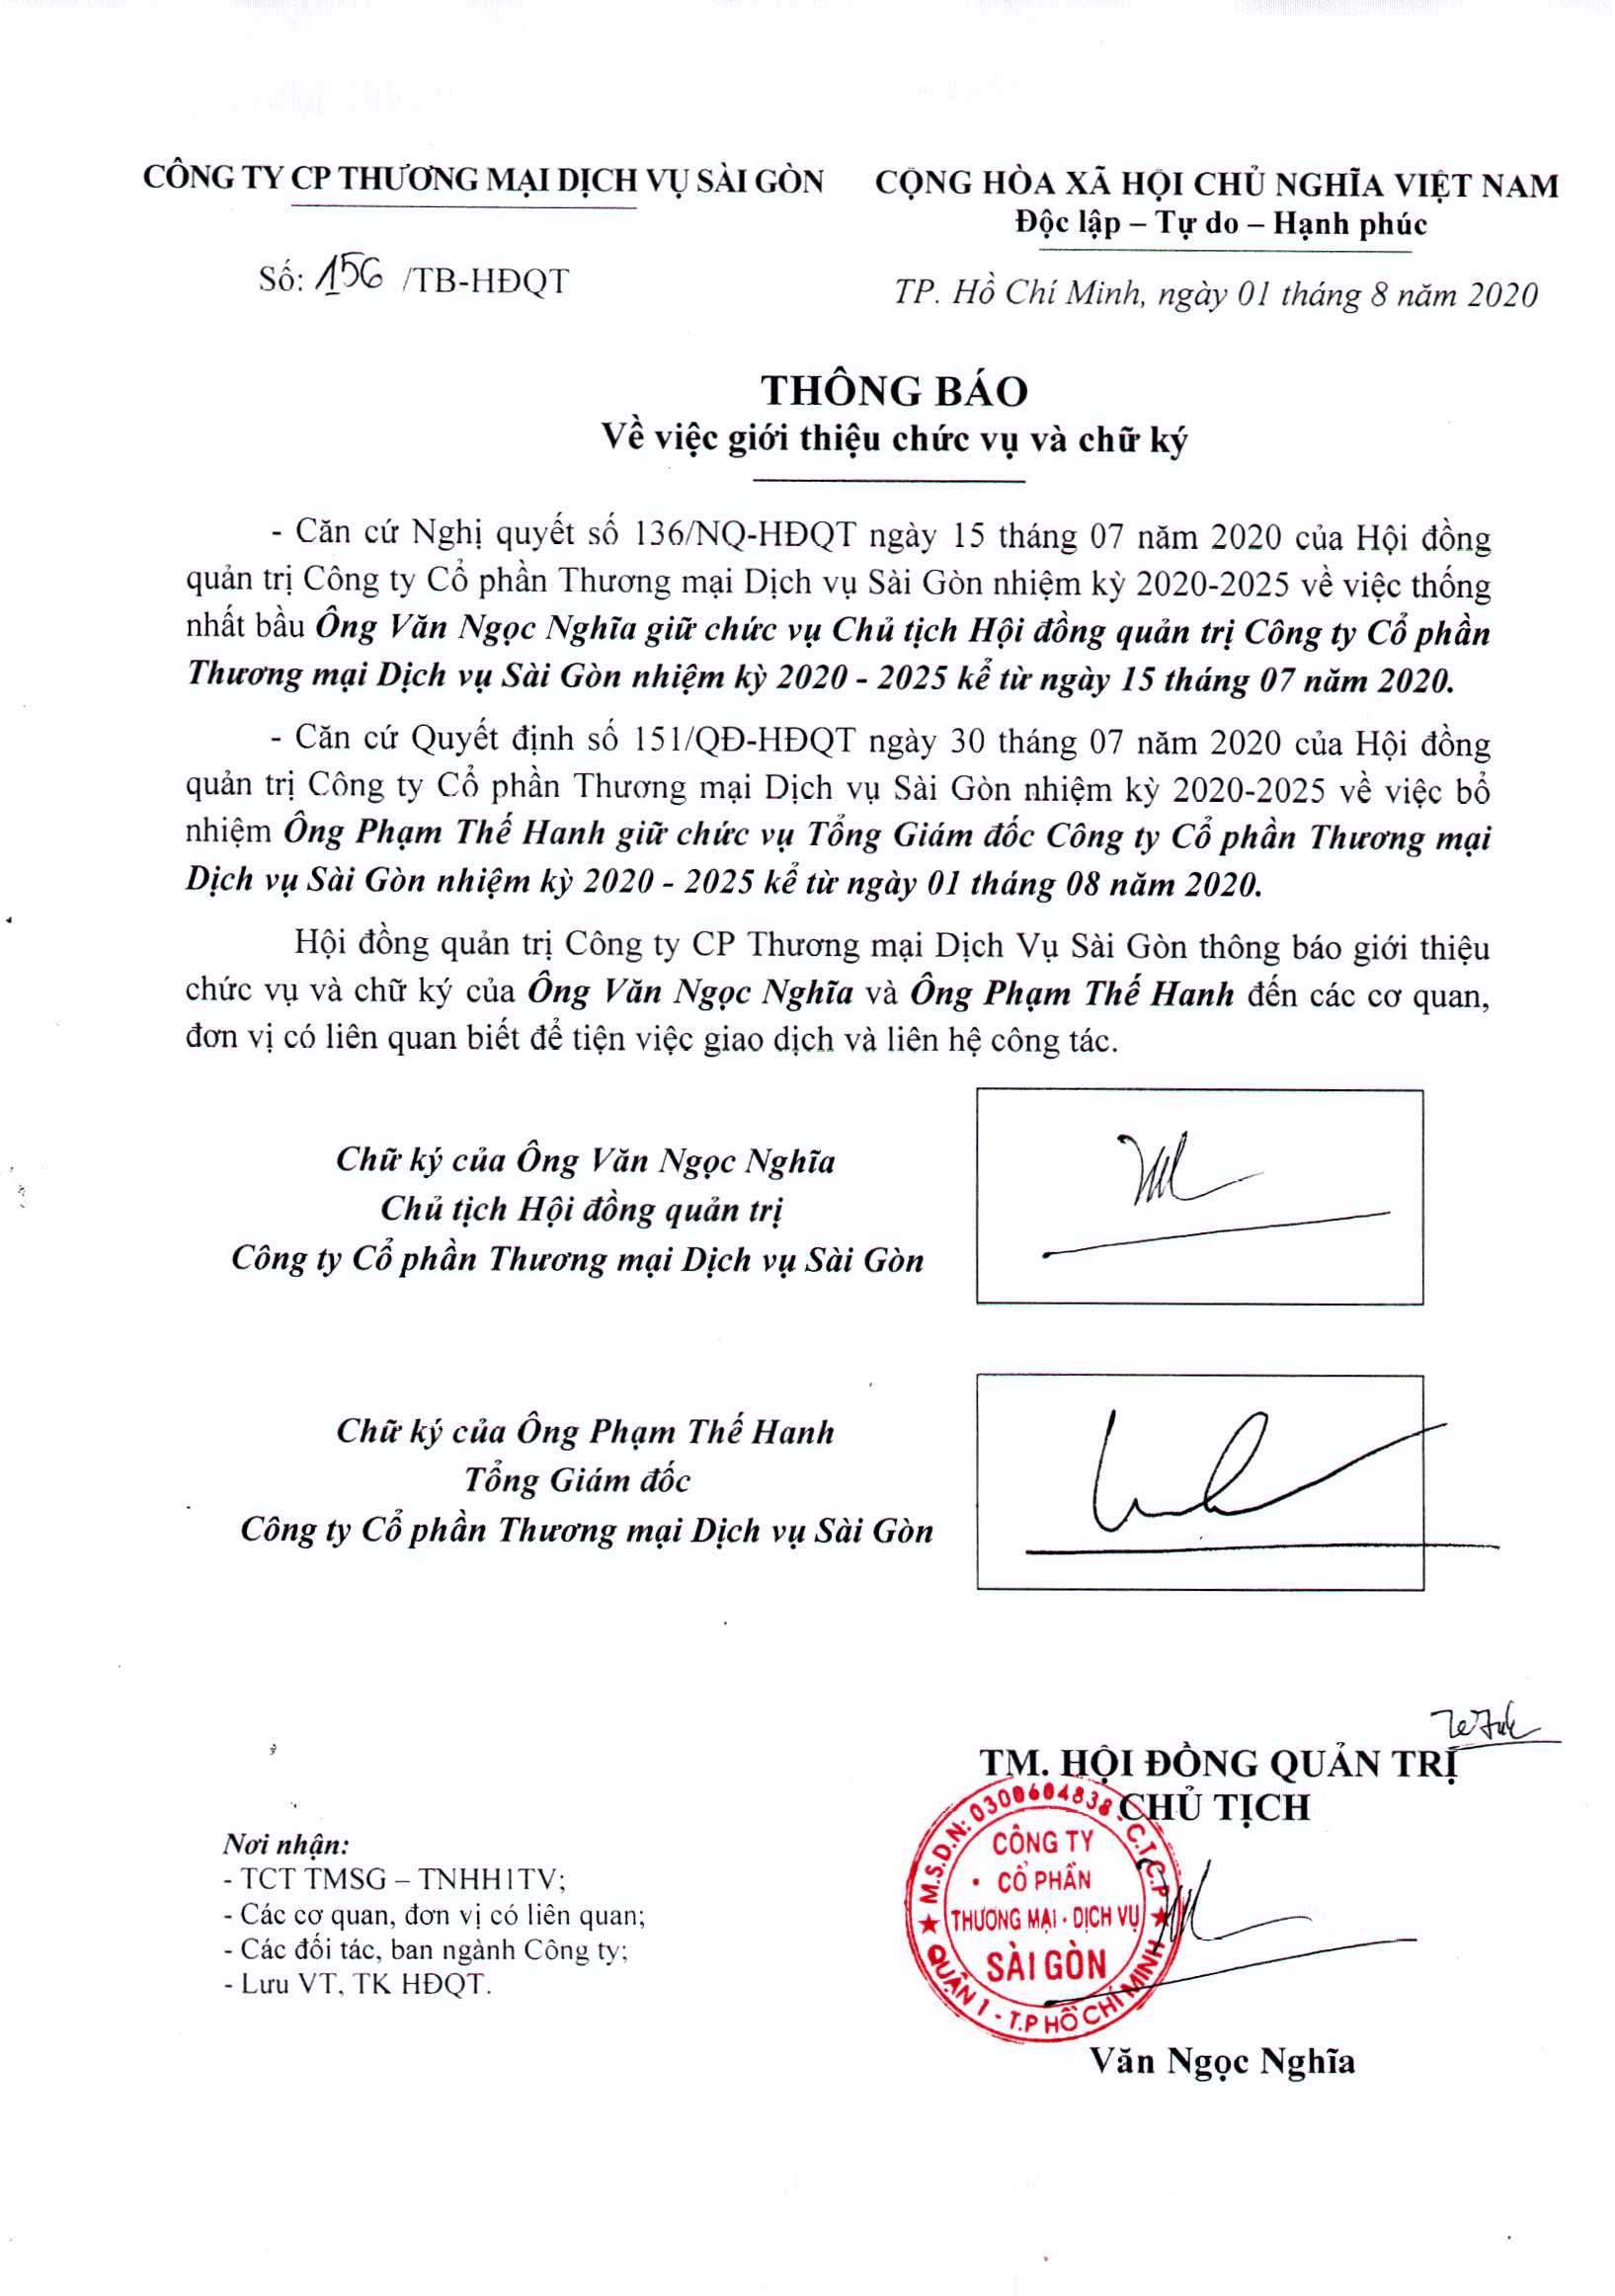 Thông báo giới thiệu chức vụ và chữ ký ông Văn Ngọc Nghĩa, Ông Phạm Thế Hanh (1)